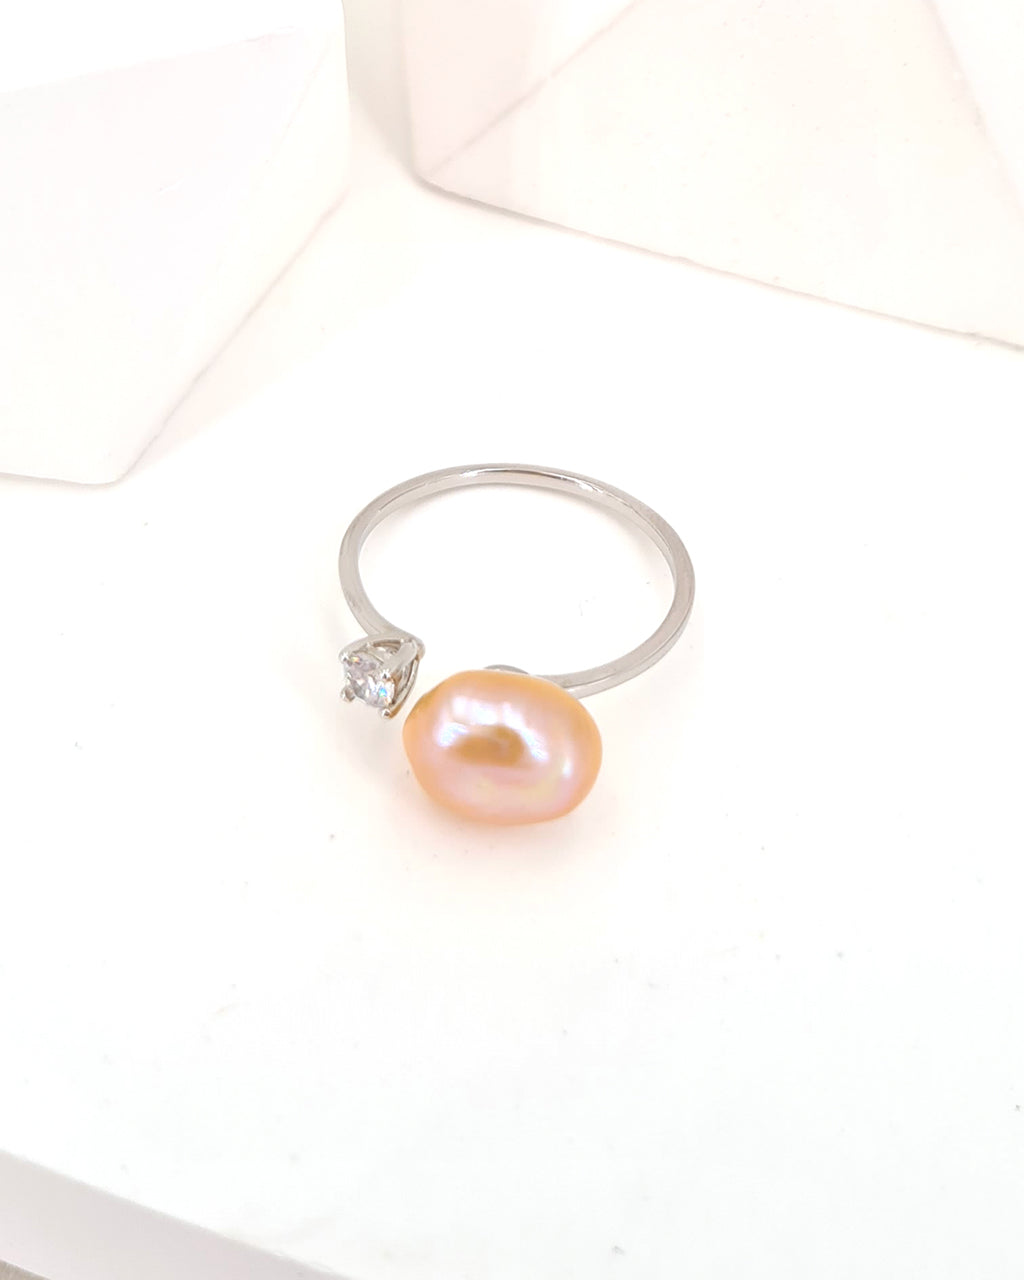 Peach Fuzz Pearl Ring